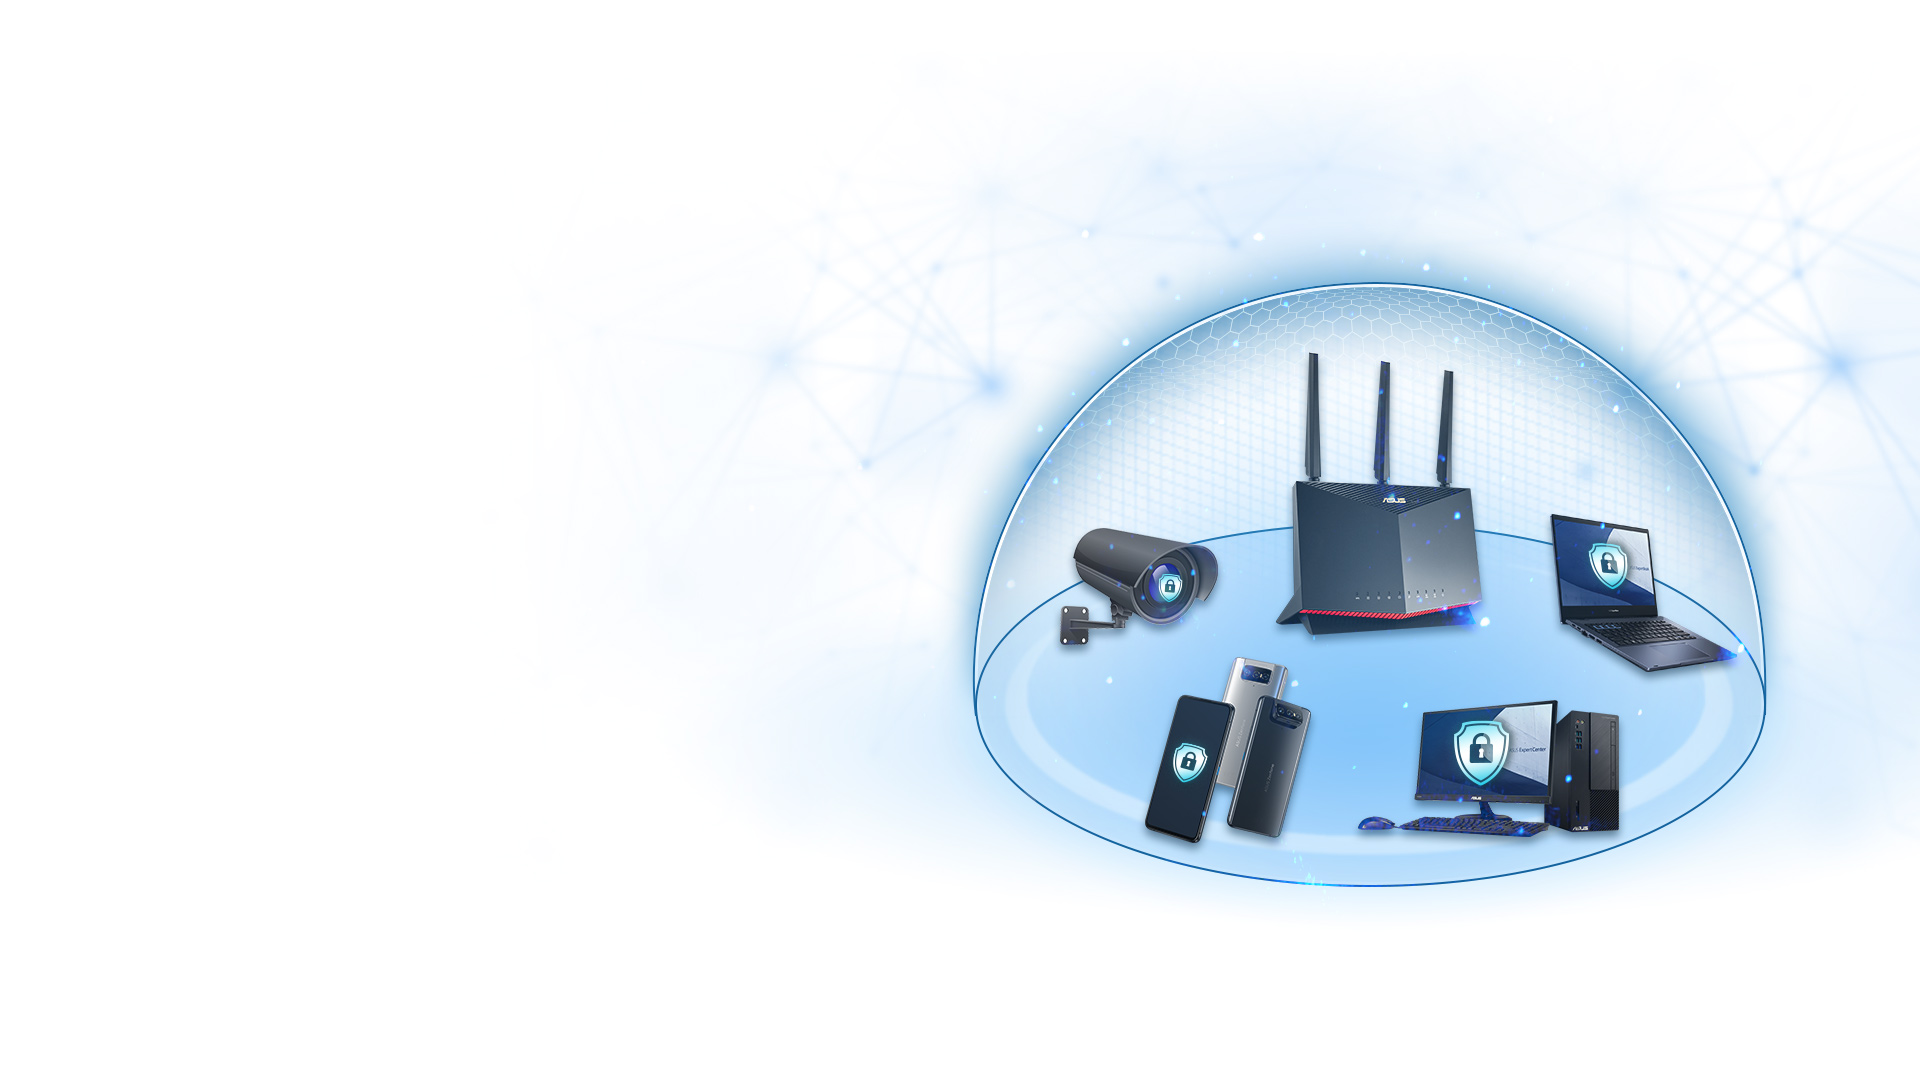 Cele mai multe routere ASUS includ tehnologia AiProtection de la Trend Micro™, care asigură că fiecare dispozitiv din rețeaua dvs. de afaceri este protejat.